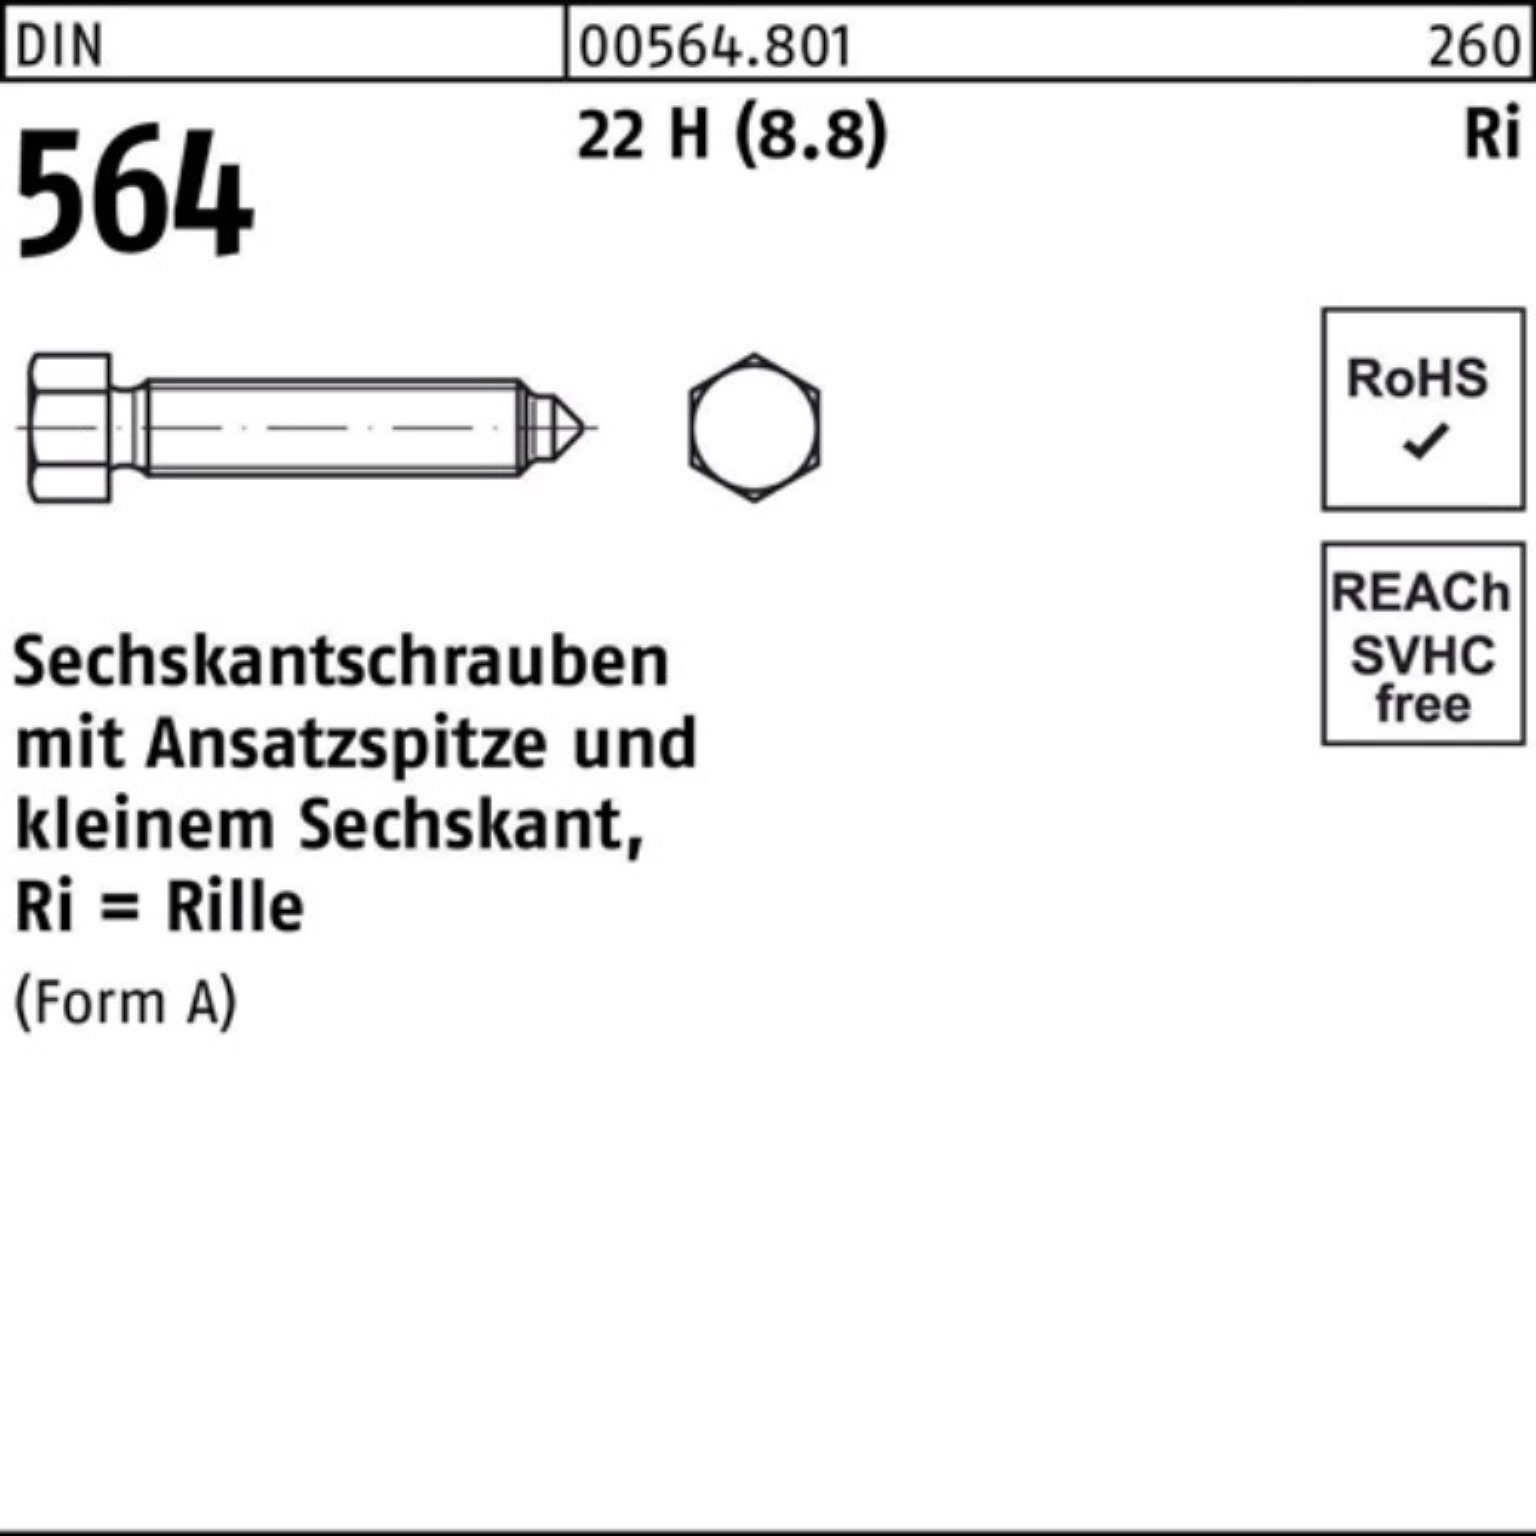 Reyher Sechskantschraube 100er Pack Sechskantschraube DIN 564 Ansatzspitze AM 16x 80 22 H (8.8)